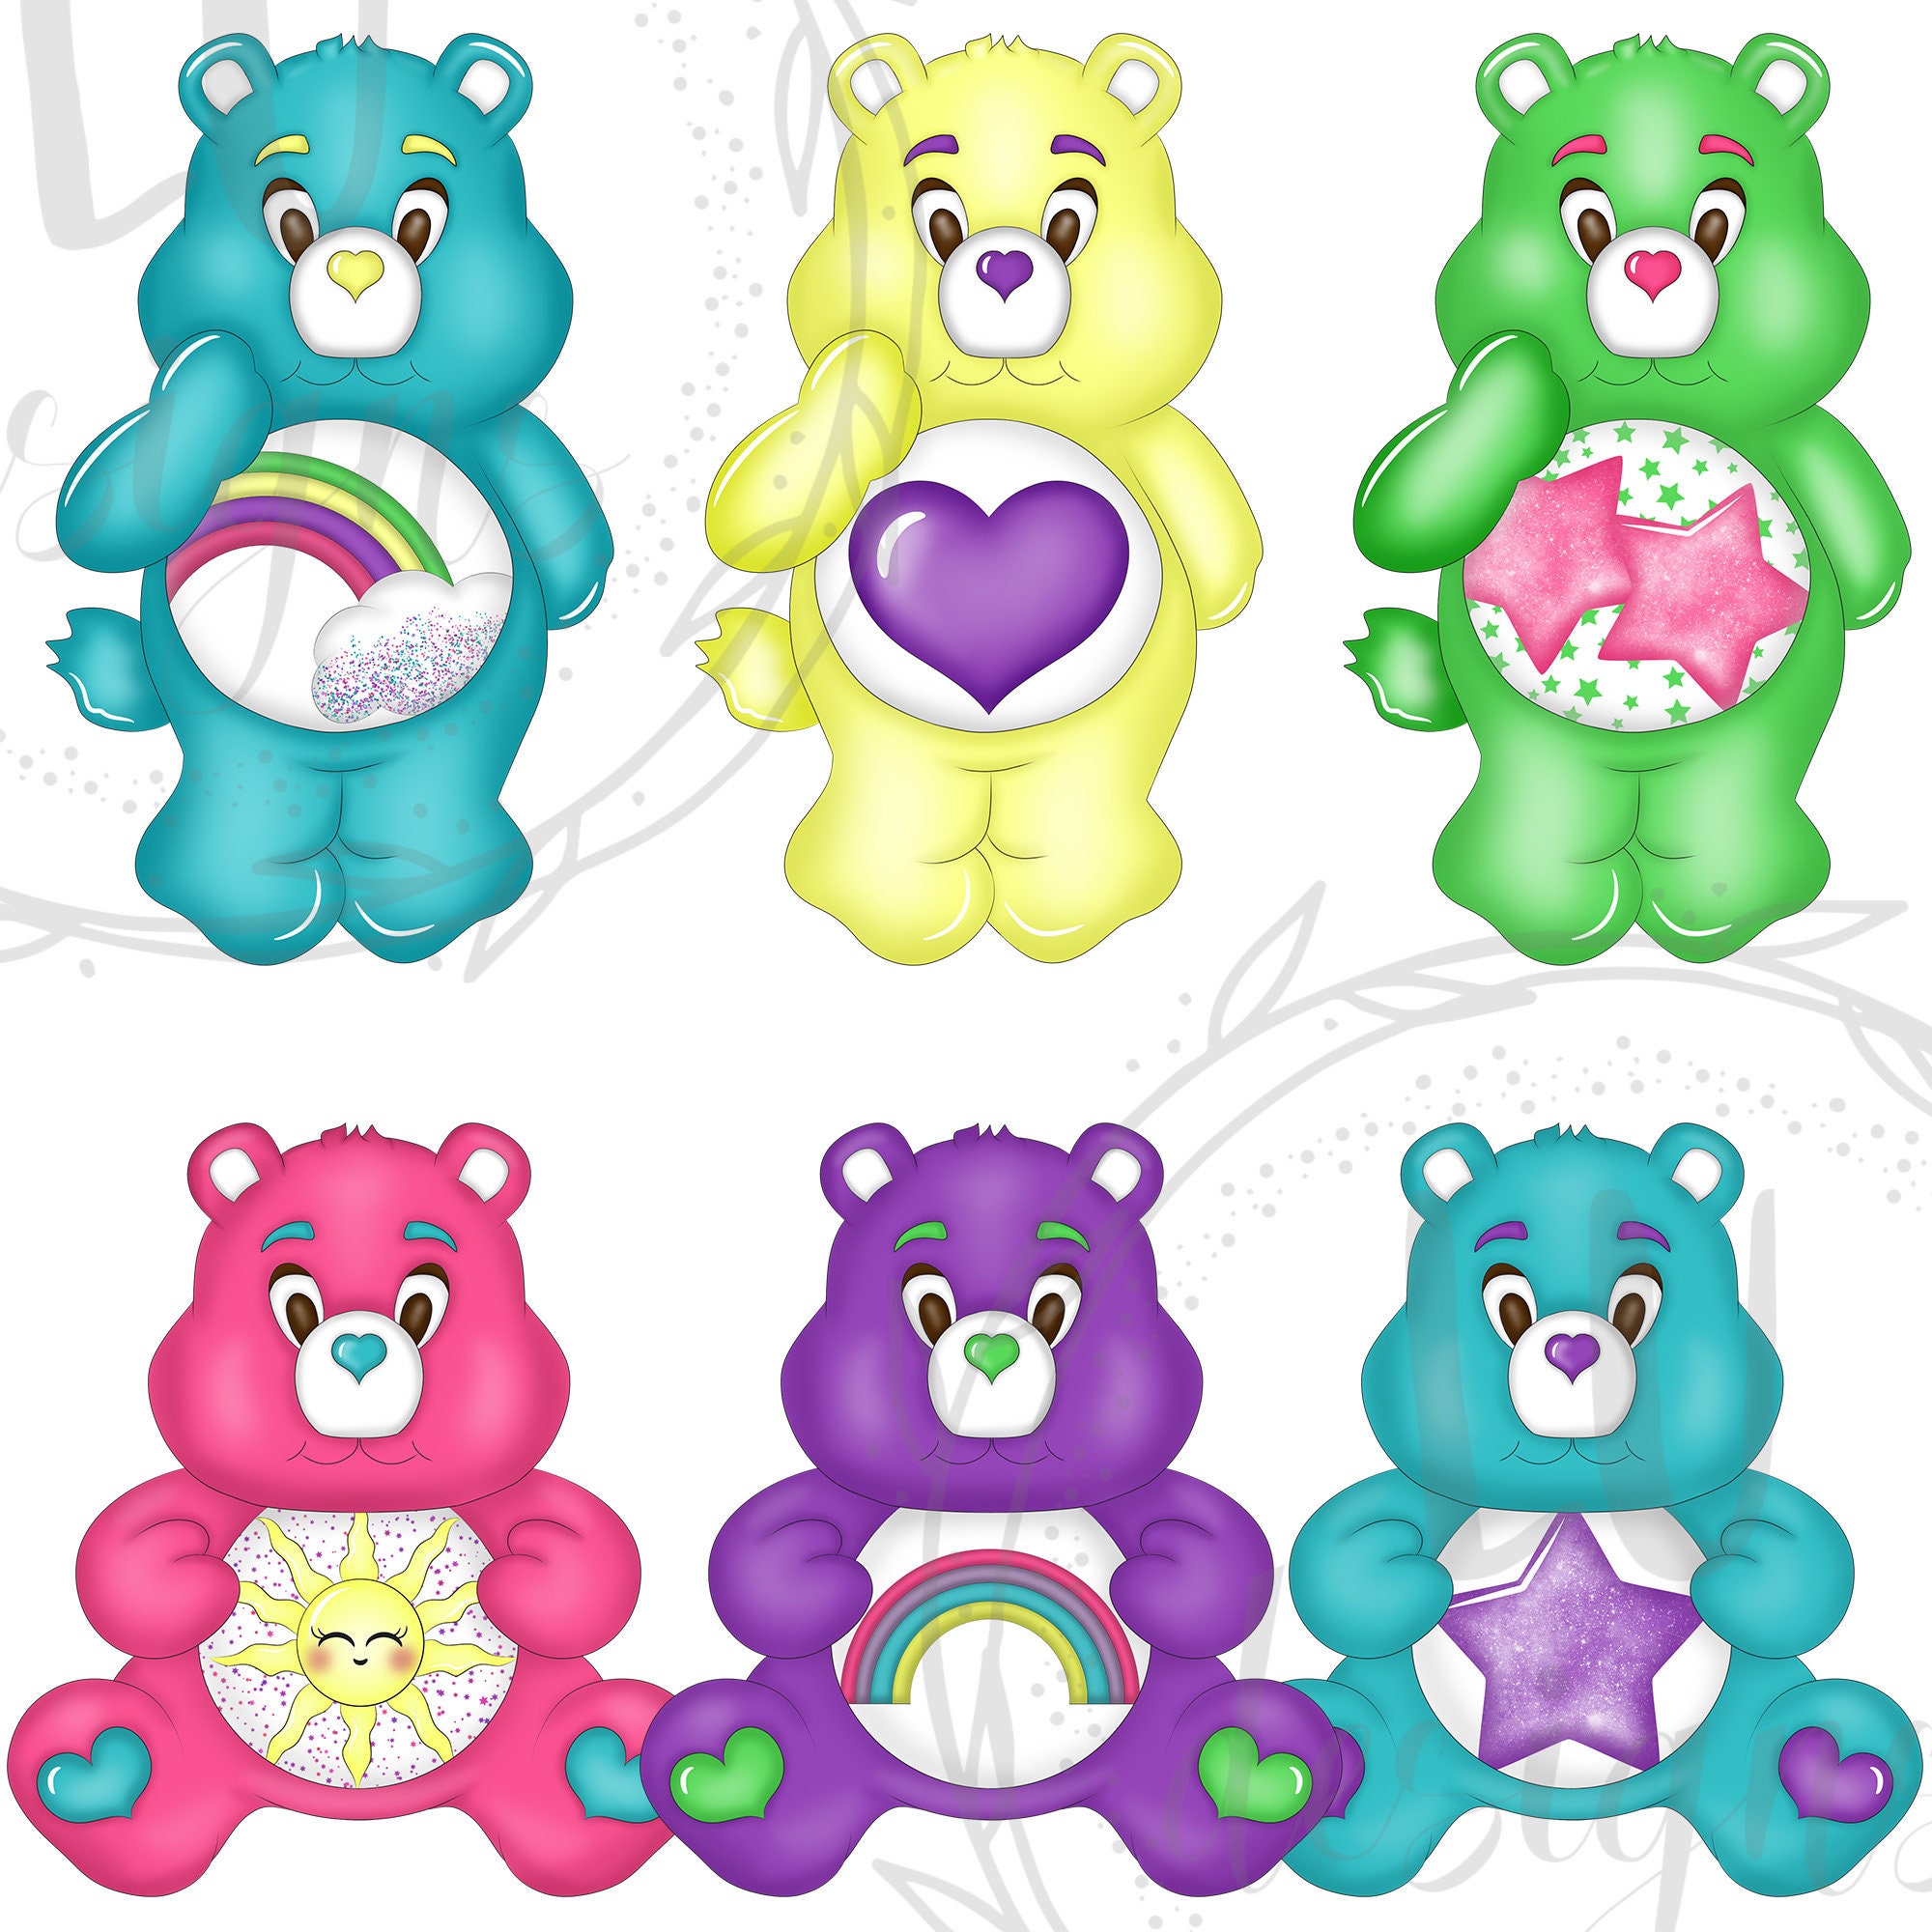 Rainbow Bears Clipart Lovely Bears Clipart Teddy Bears Planner - Etsy